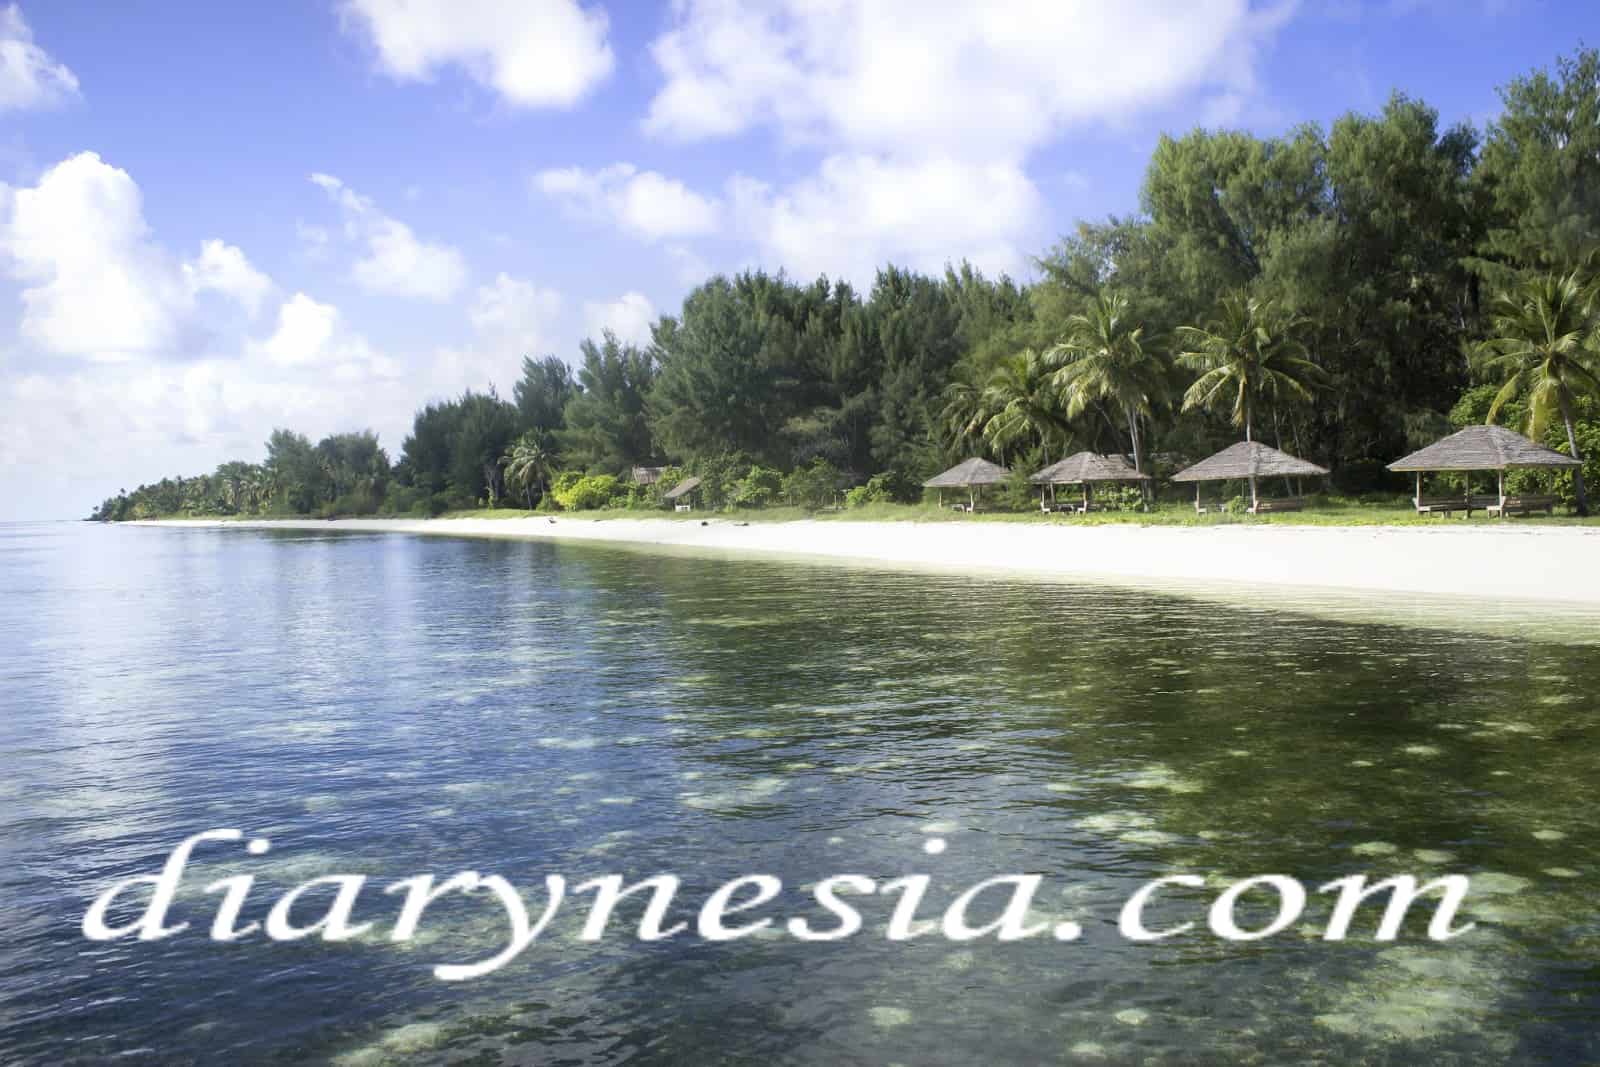 wakatobi tourism, South East Sulawesi, Wakatobi tourist attraction, diarynesia